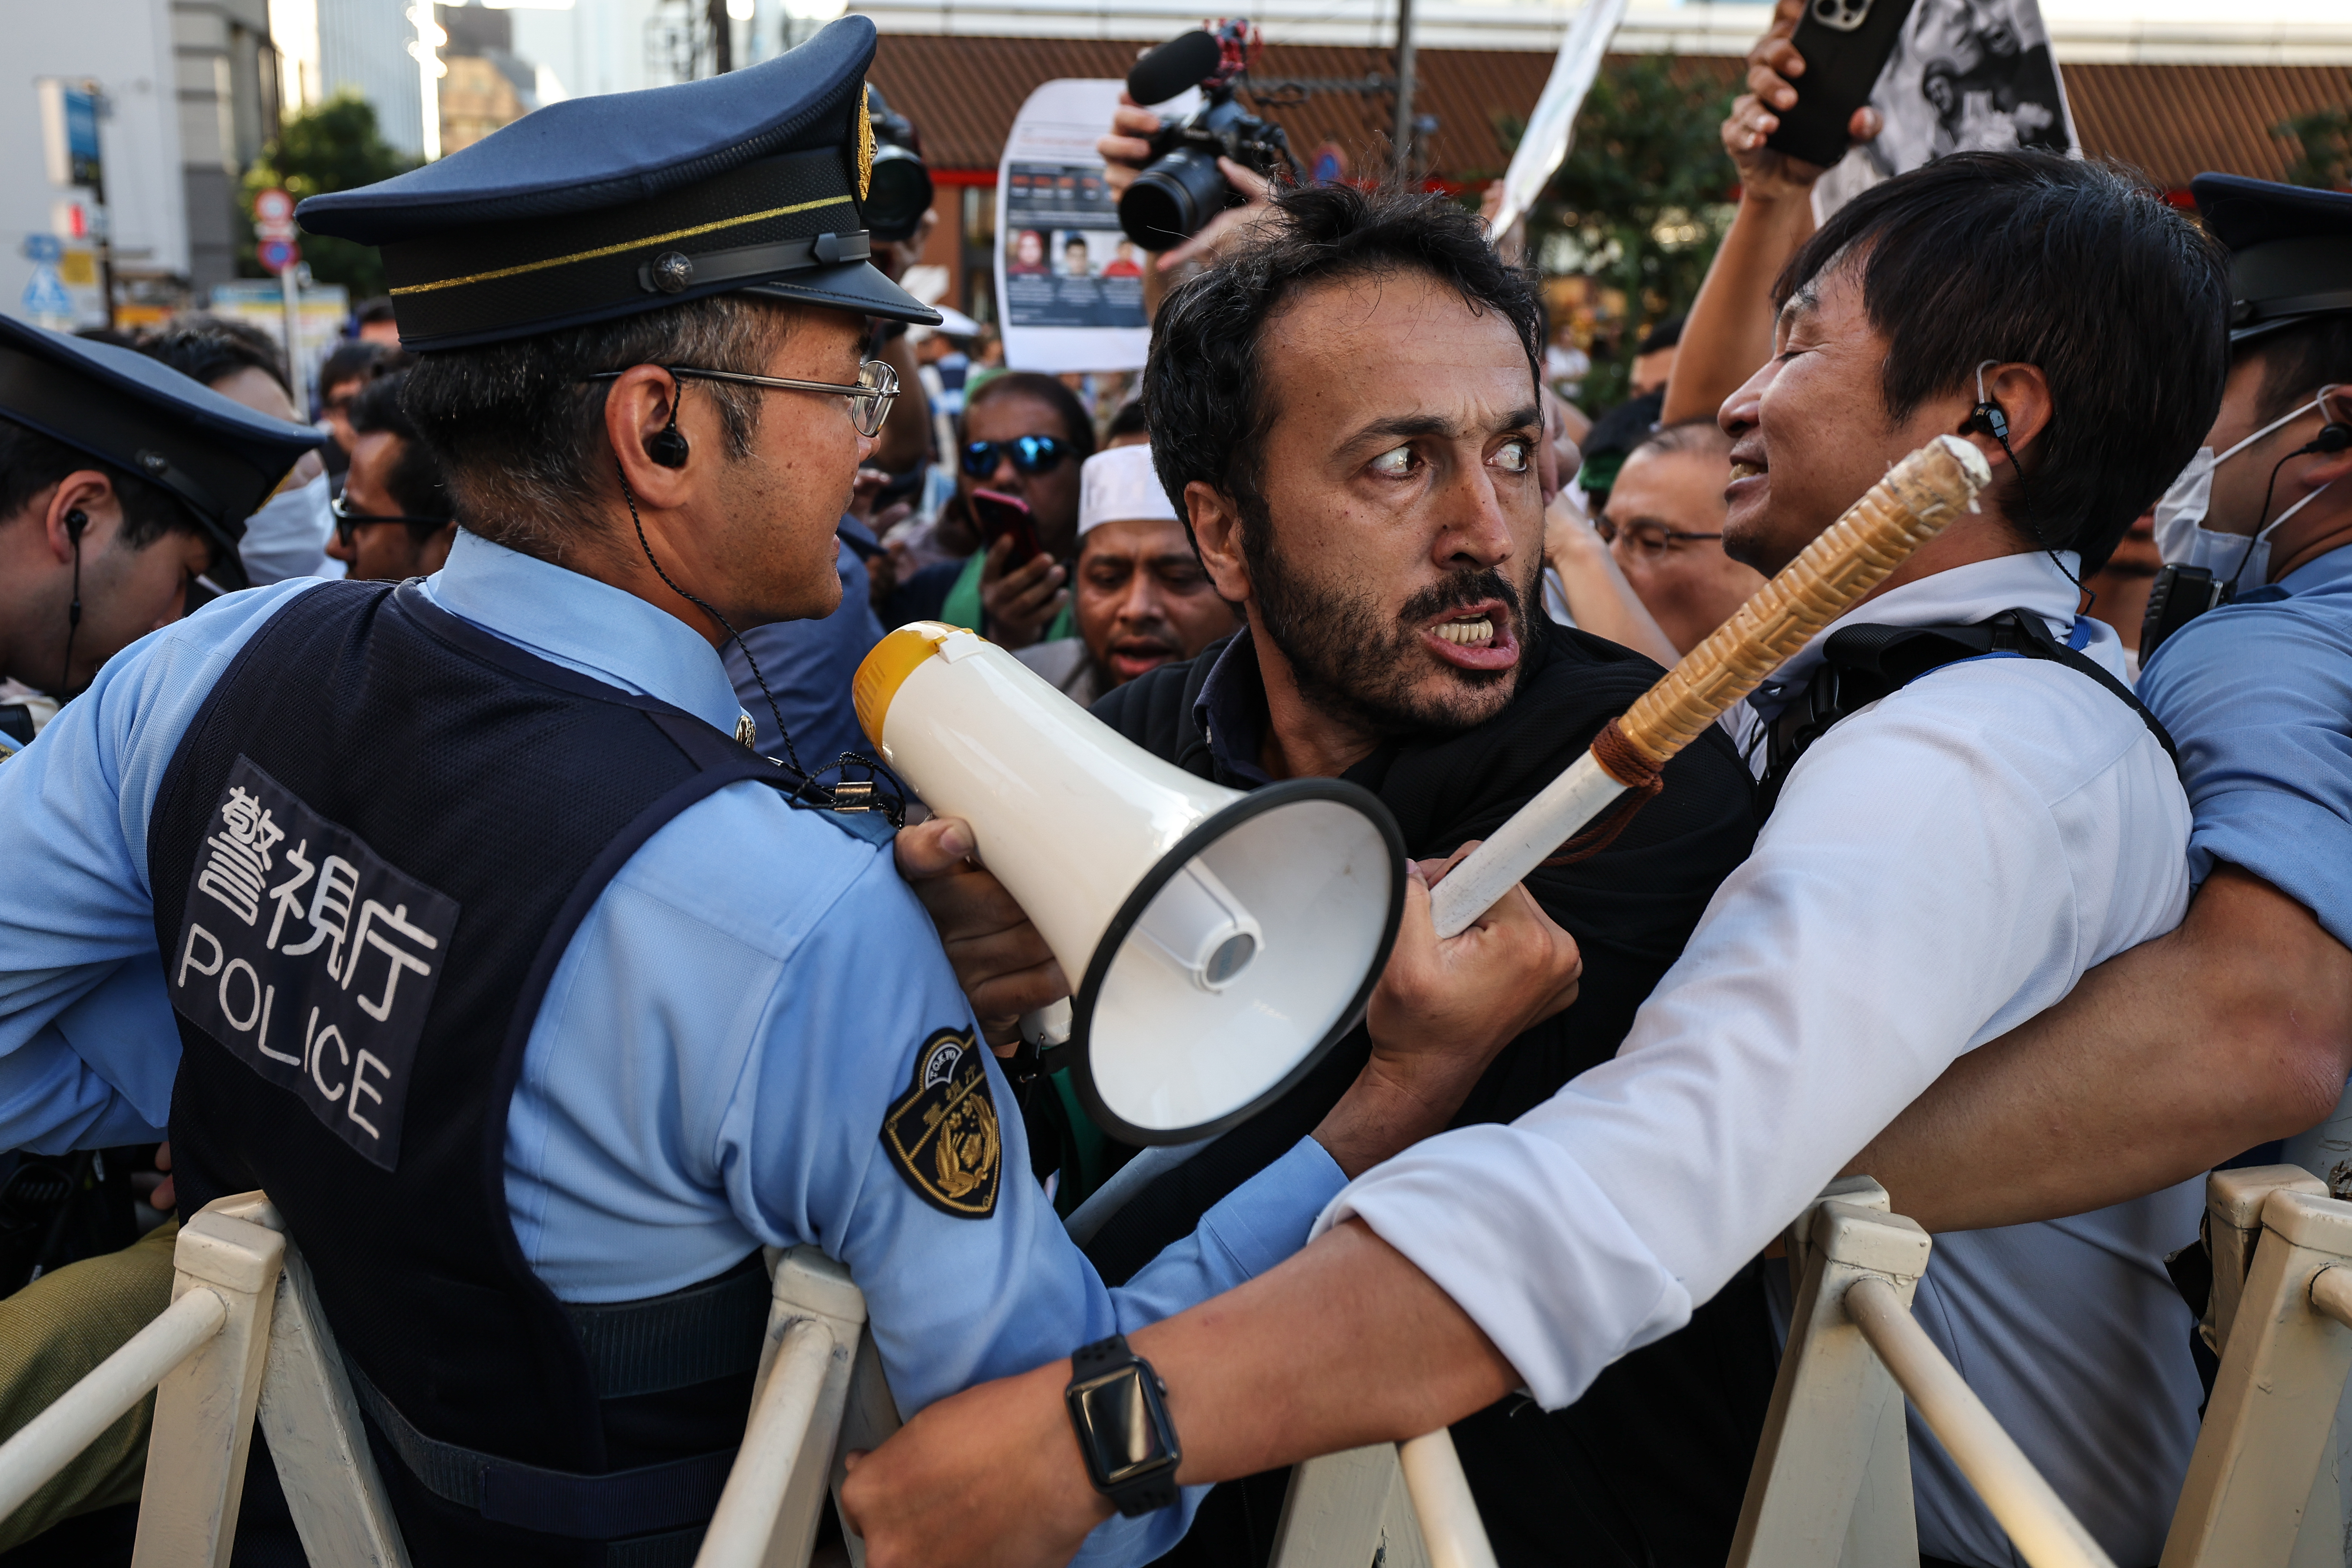 Polizisten drängen einen Mann während einer Protestkundgebung in der Nähe der israelischen Botschaft in Japan zurück